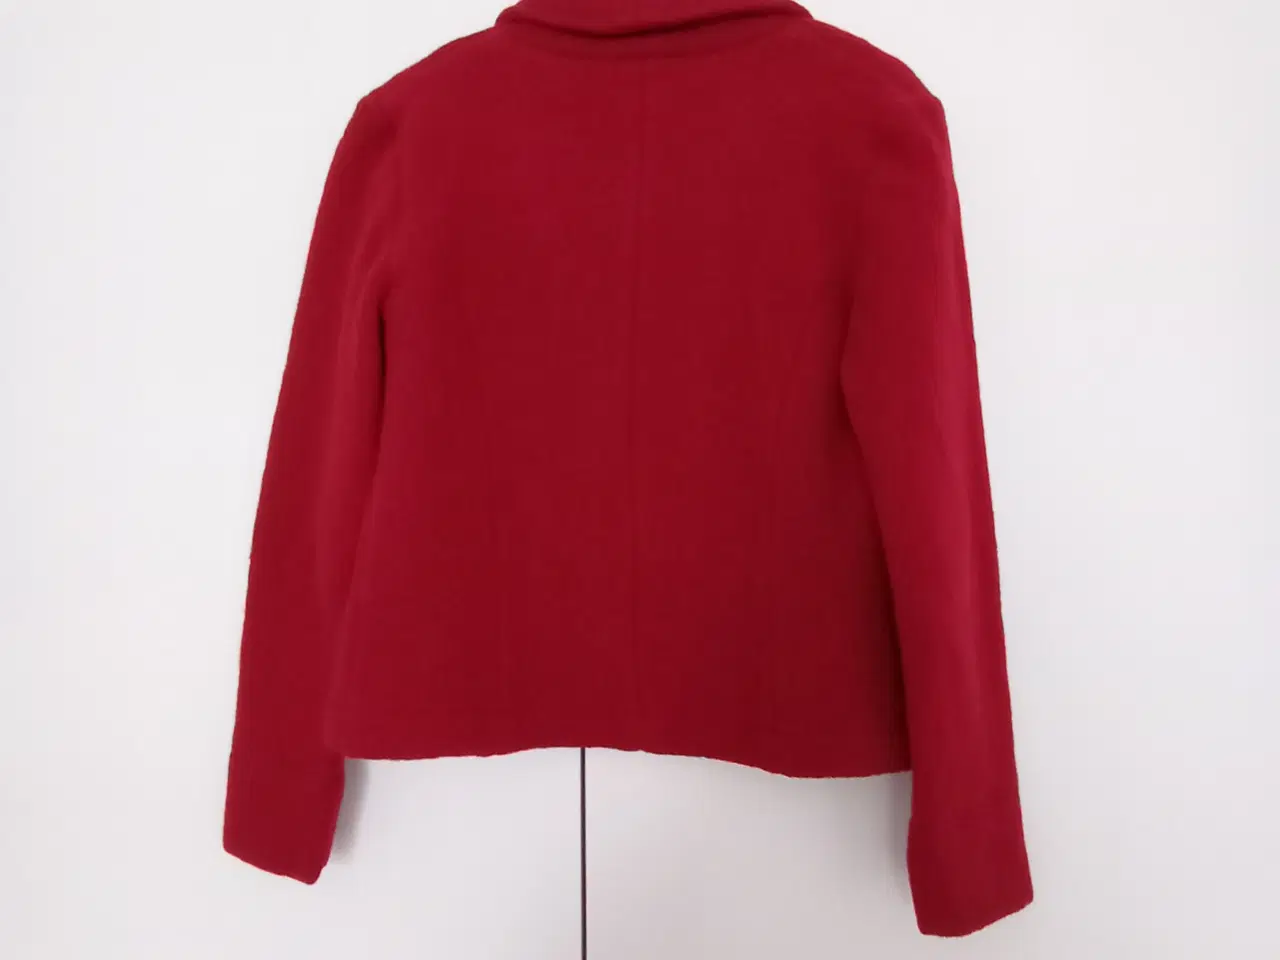 Billede 2 - Rød uld jakke med ærmeslidser. Str. 38